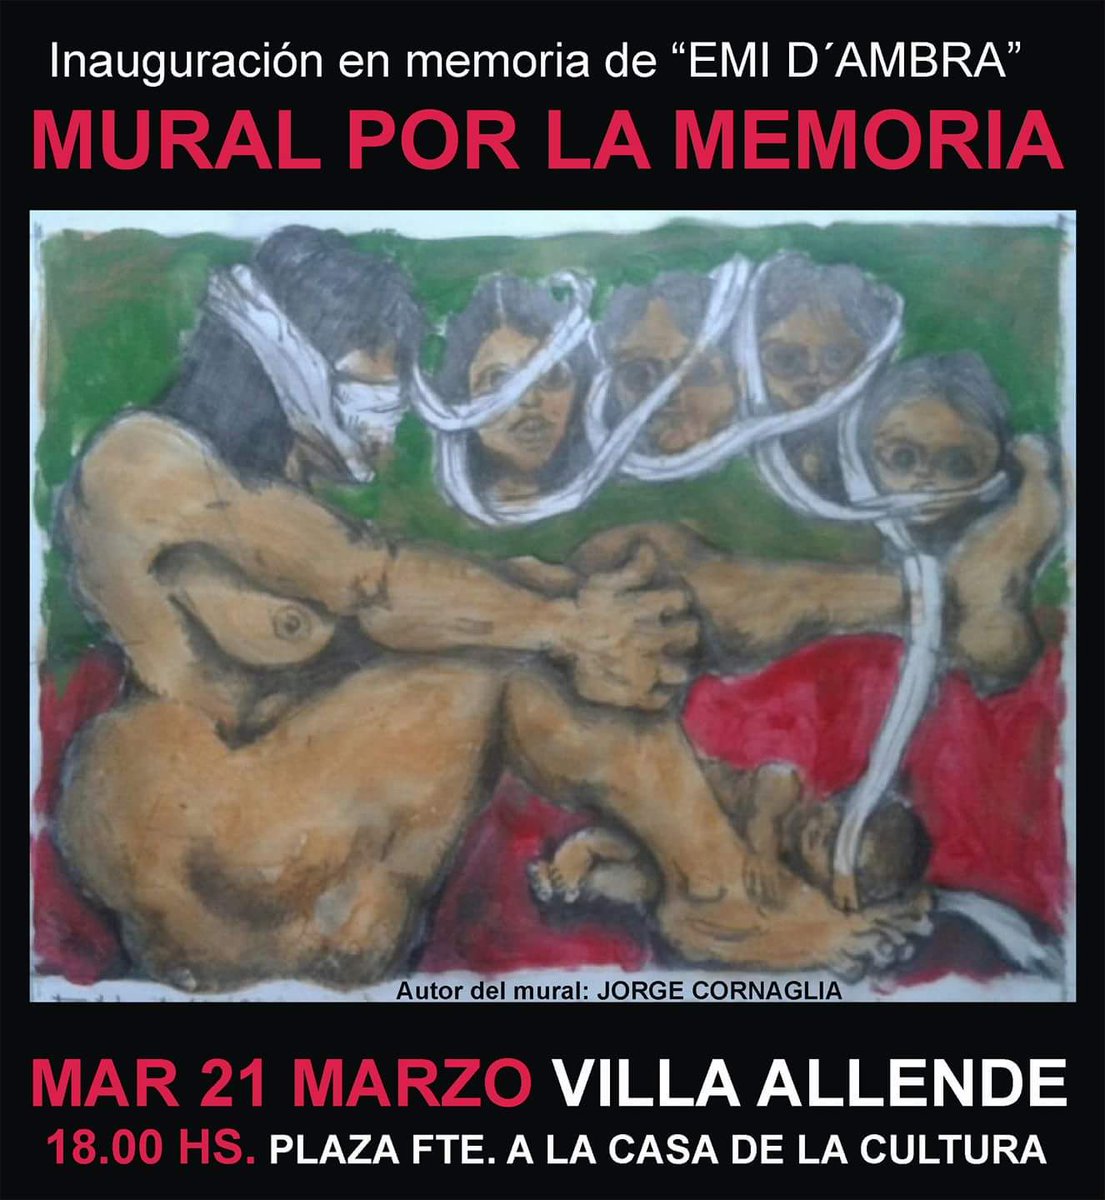 #Hoy #VillaAllende #MuralPorLaMemoria 
18h plaza fte Casa de la Cultura. 
Ayudanos a difundir @CORDOBAABUELAS @abuelasdifusion @PasseriniOk